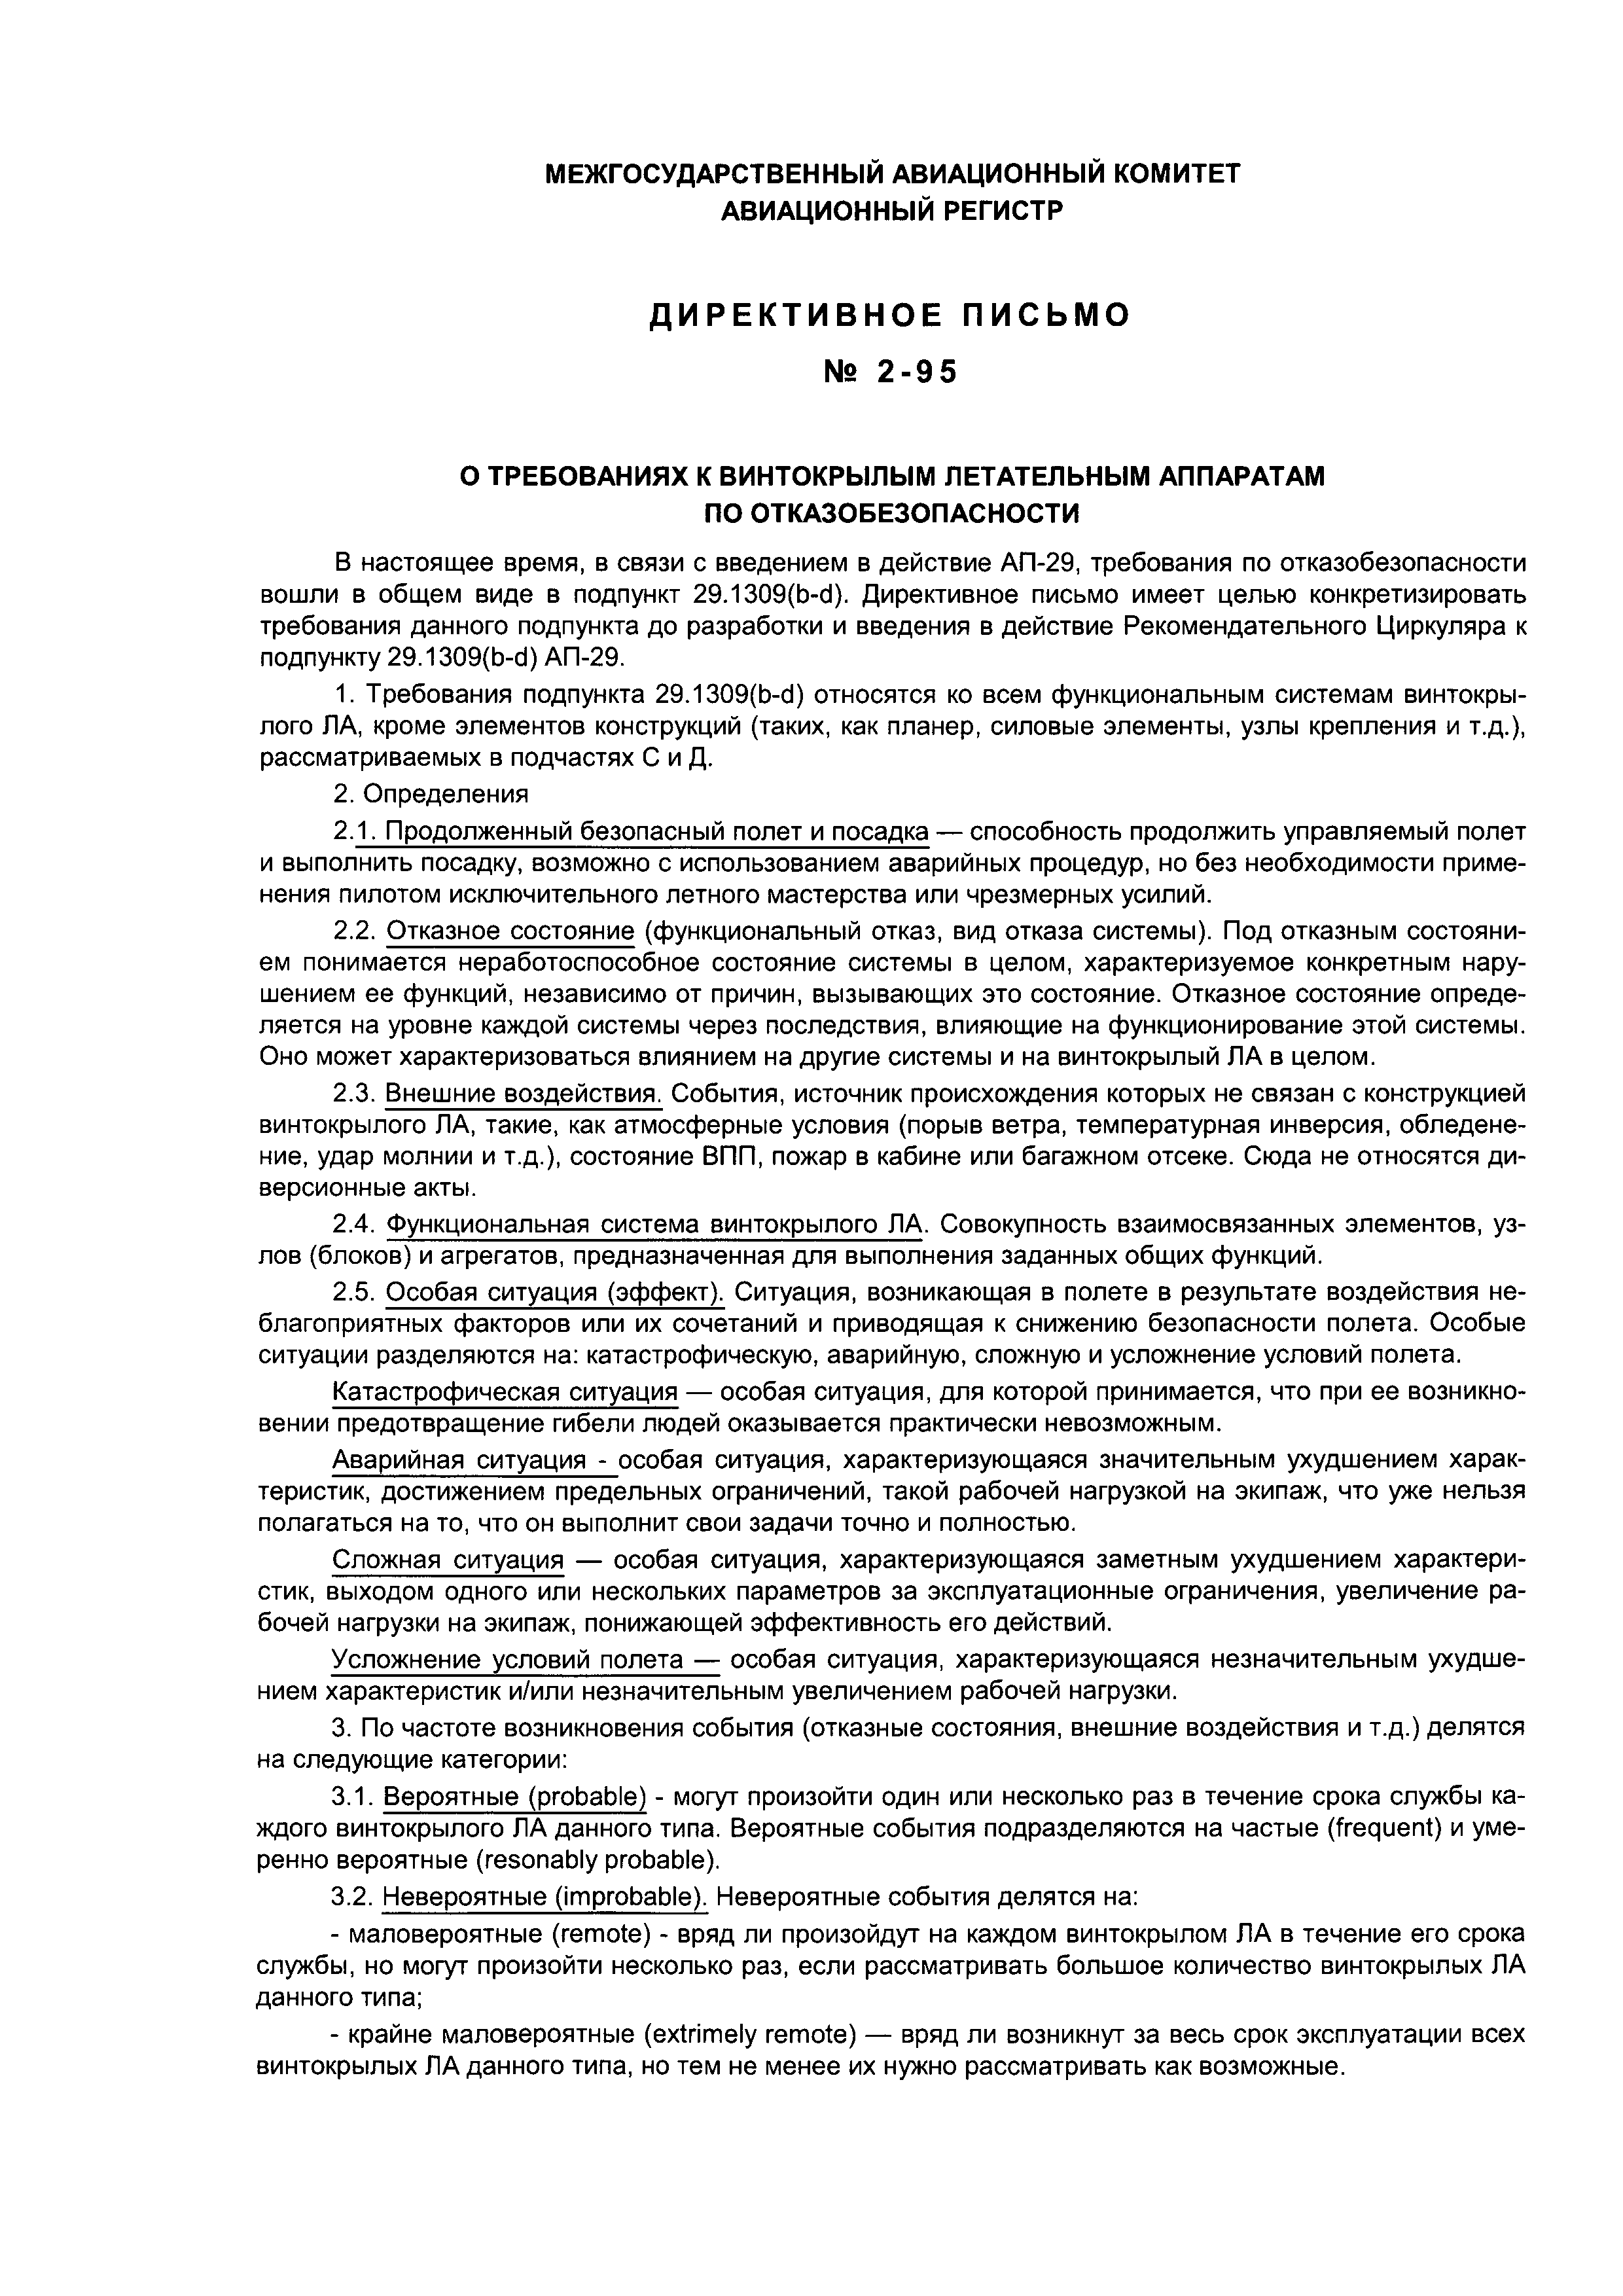 Директивное письмо 2-95